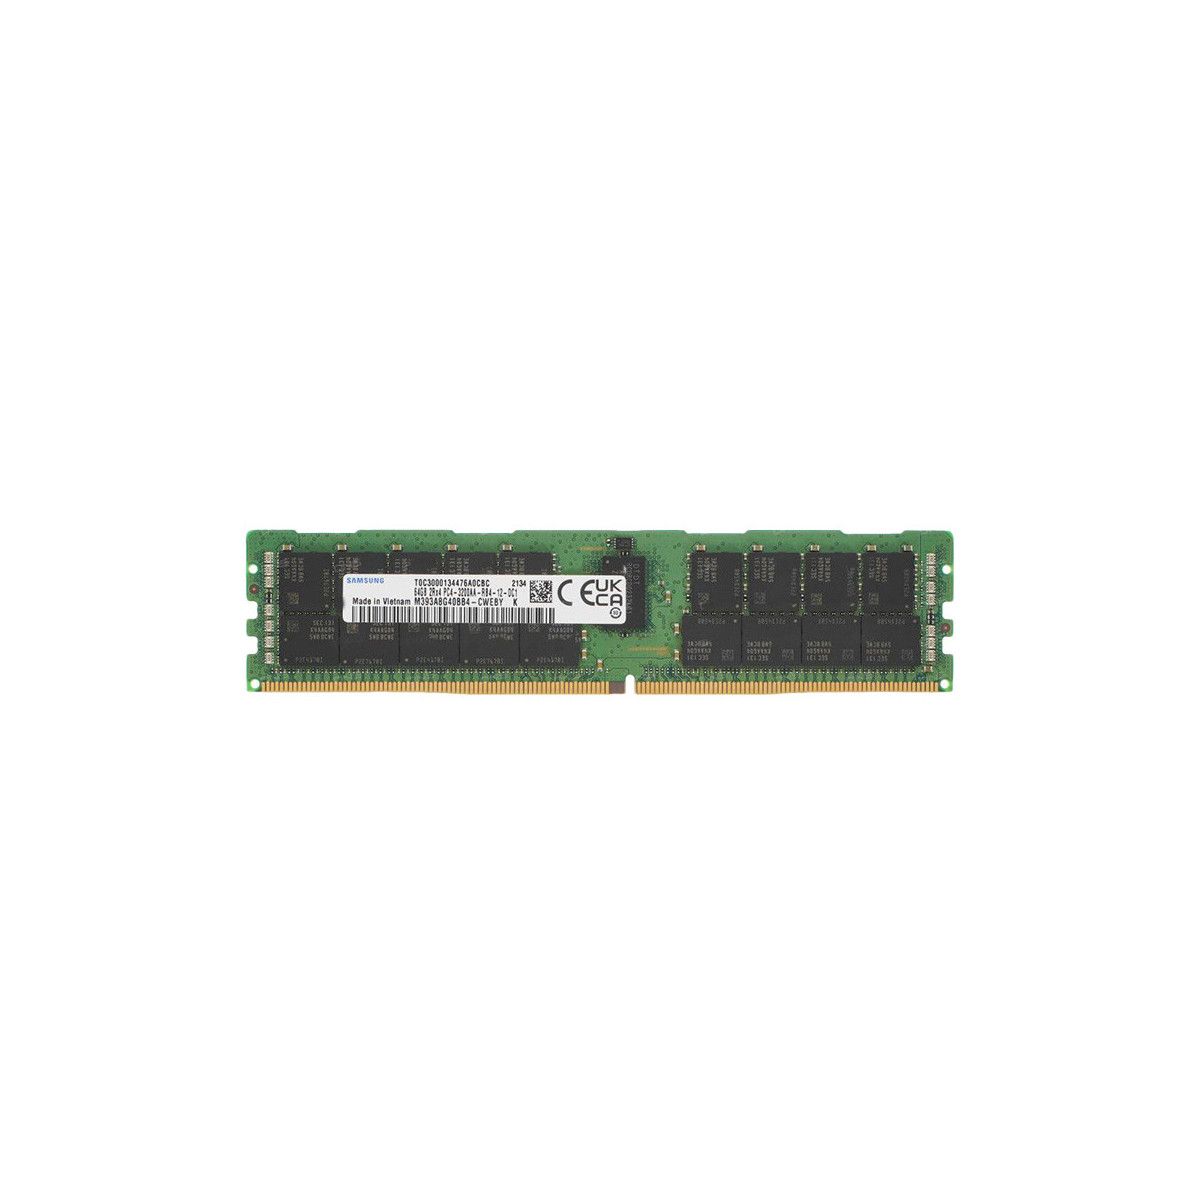 P25205-B21-MS - Memstar 1x 64GB DDR4-3200 RDIMM PC4-25600R - Mem-star compatibel OEM geheugen 1 - Memstar 